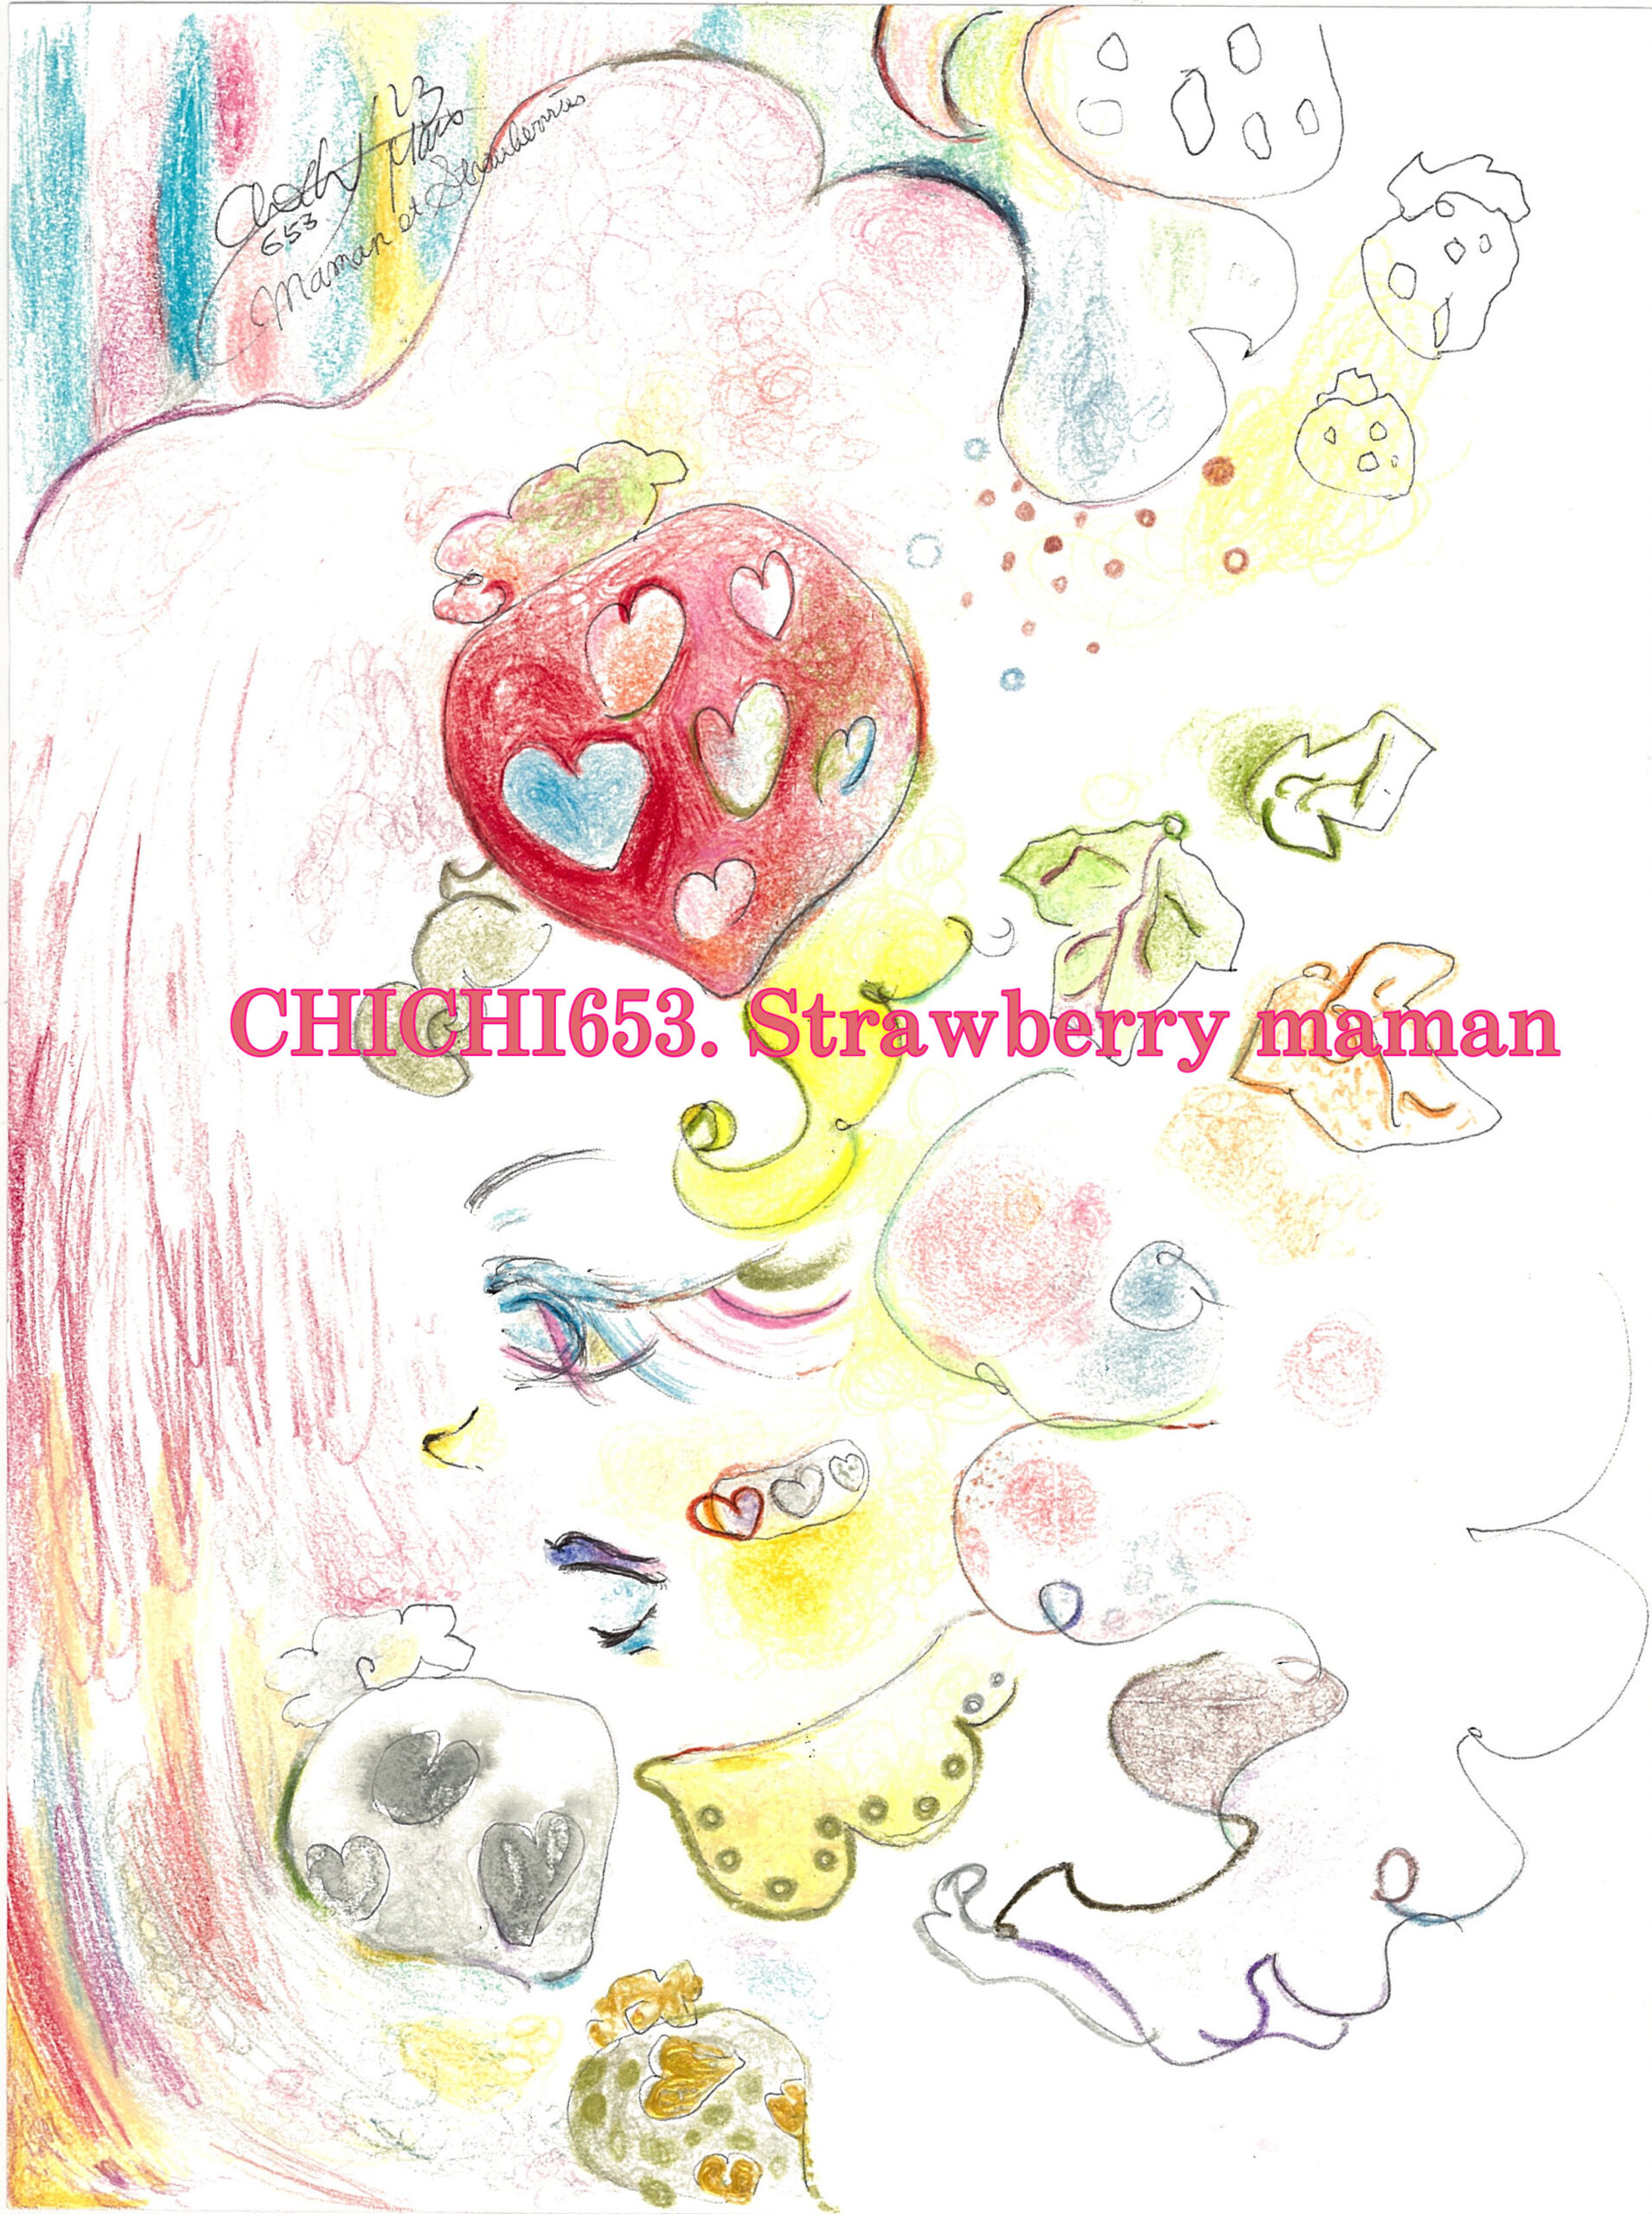 2023-chichi-strawberry-maman